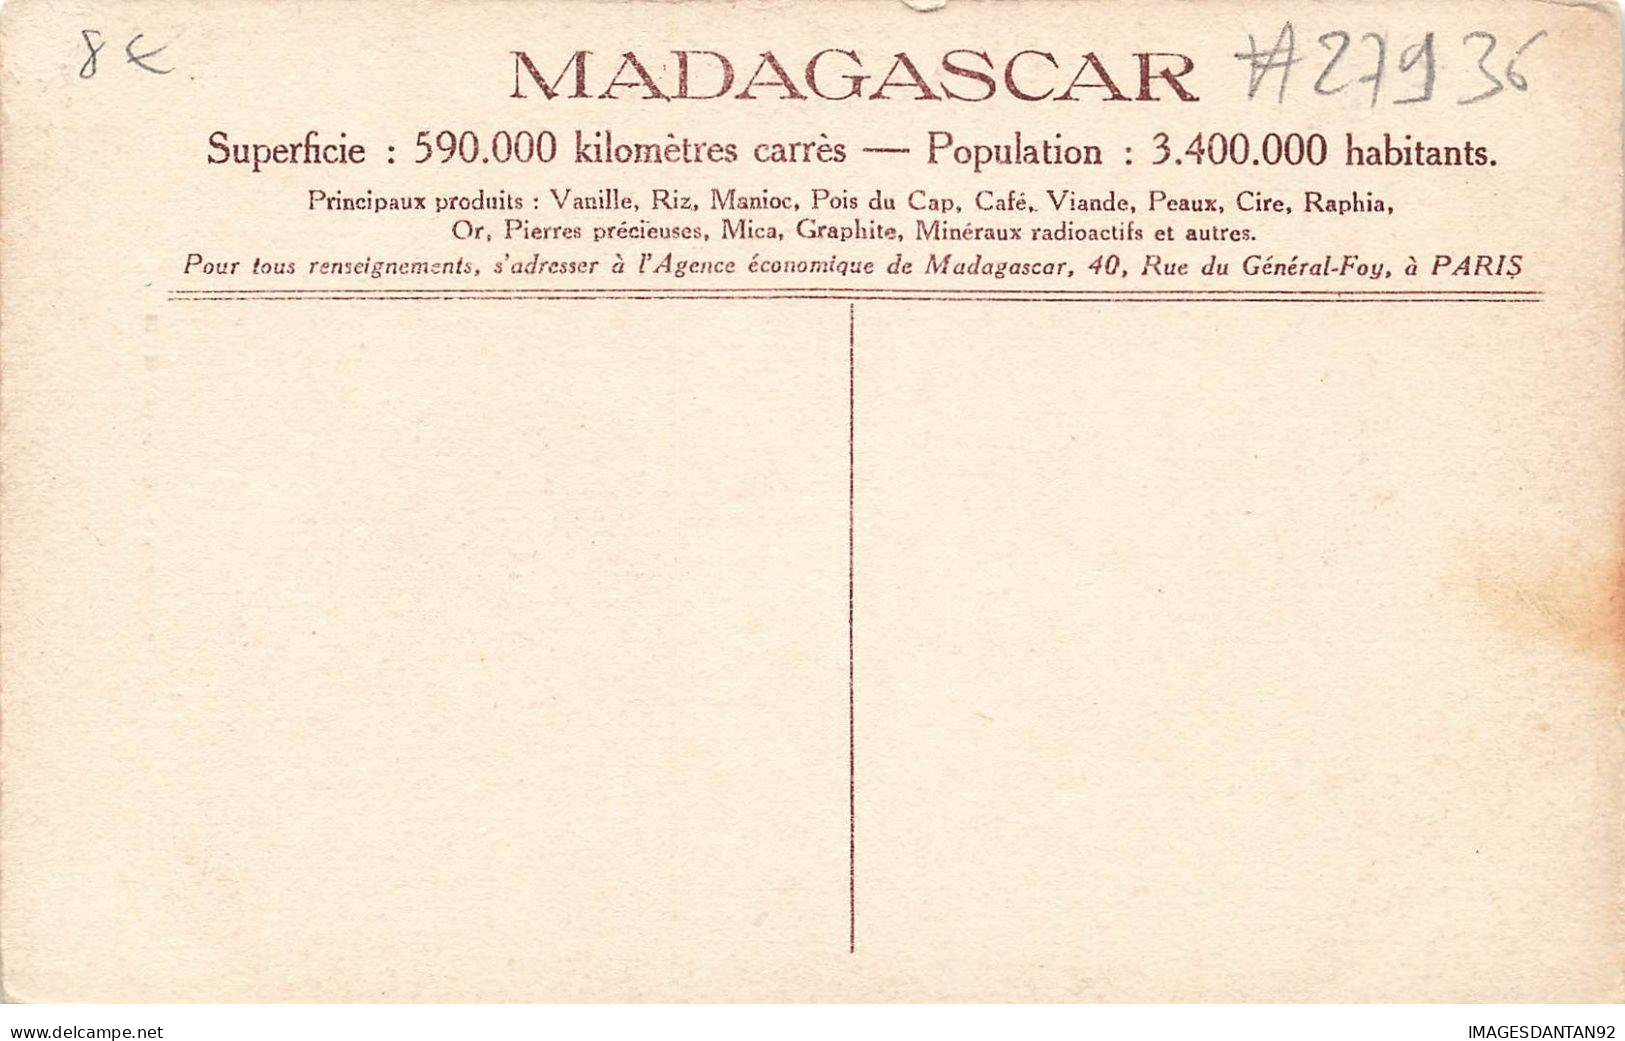 MADAGASCAR #27936 SAKALAVE - Madagascar